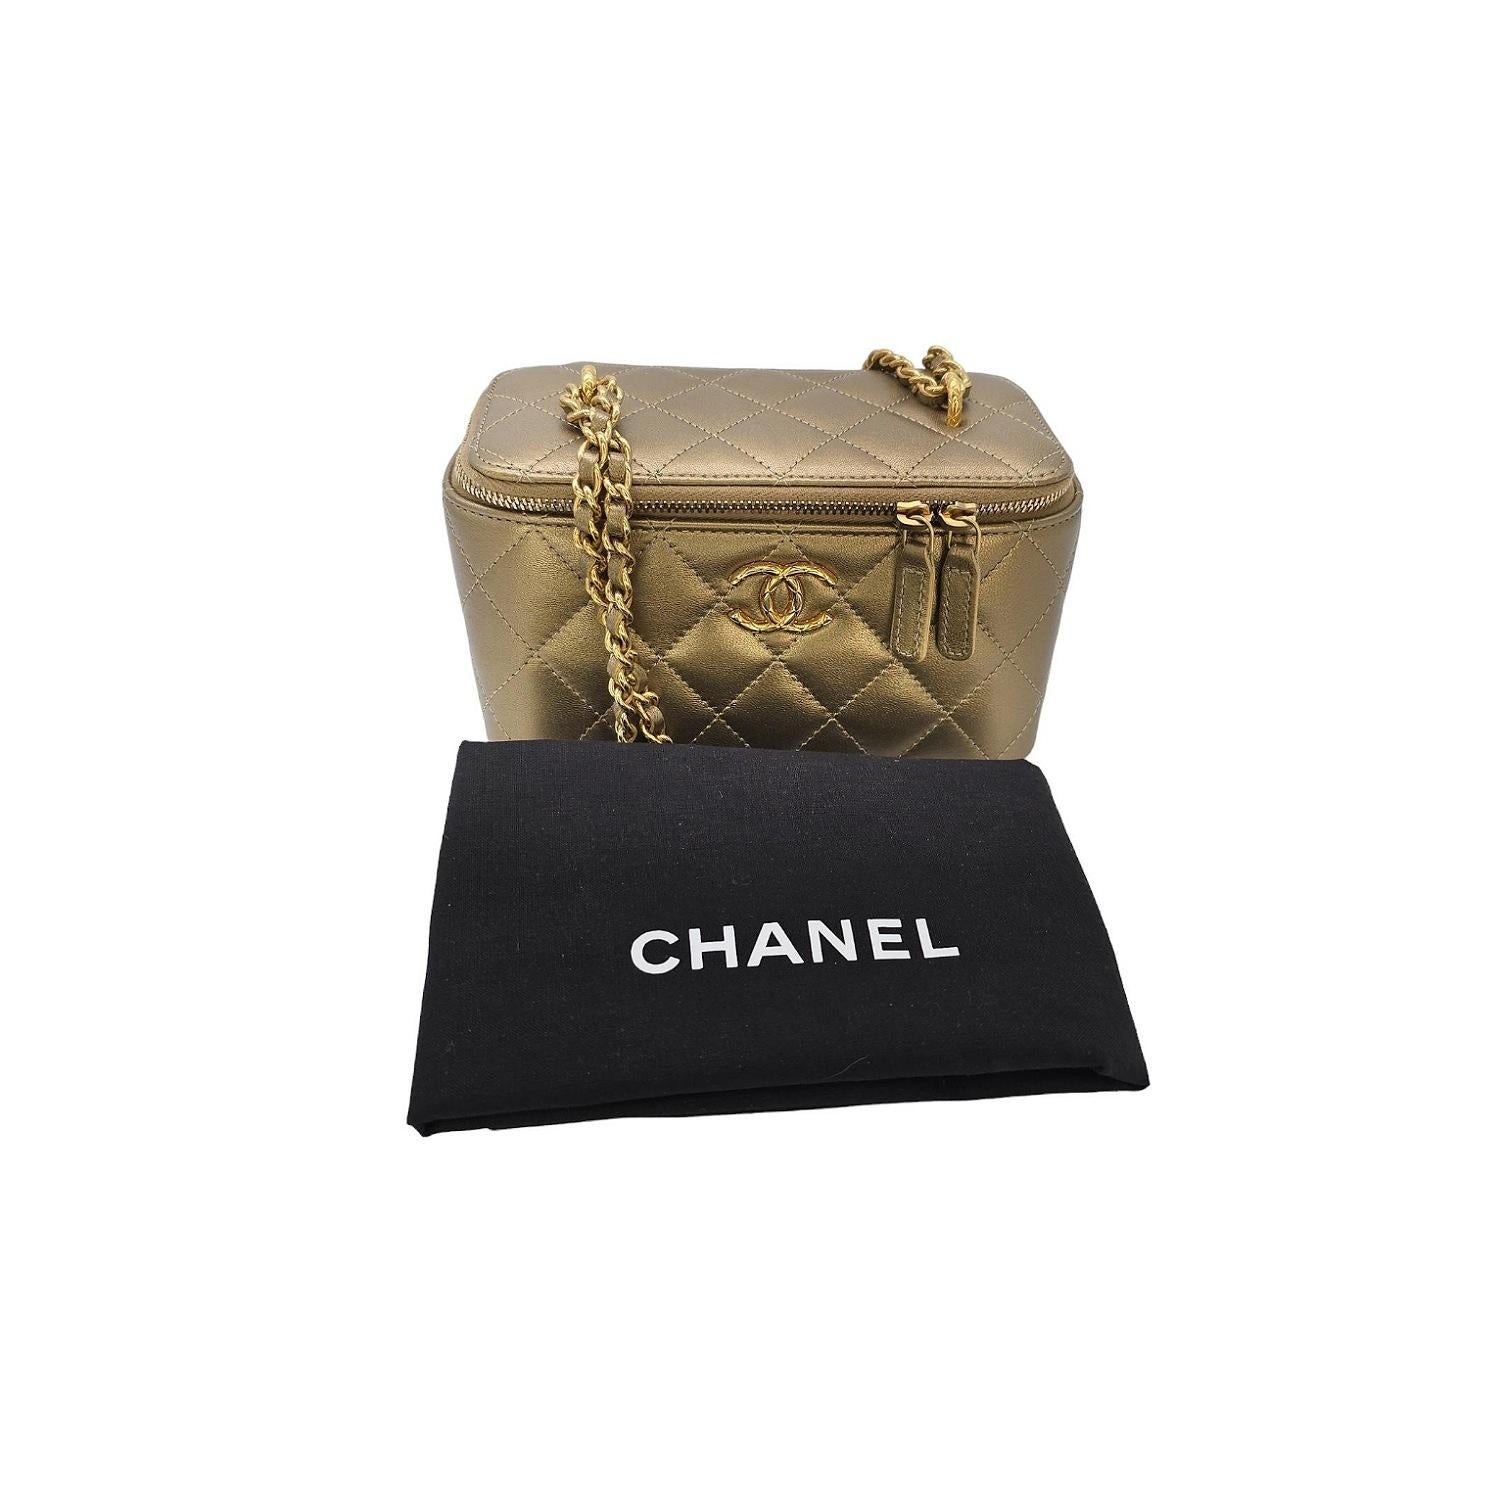 Das Chanel Metallic Quilted Lambskin Small Dynasty Vanity Case ist ein elegantes und exklusives Stück der Designermarke. Dieser Kosmetikkoffer aus goldfarbenem, gestepptem Lammleder strahlt Luxus aus. Der doppelte Reißverschluss gibt den Blick auf